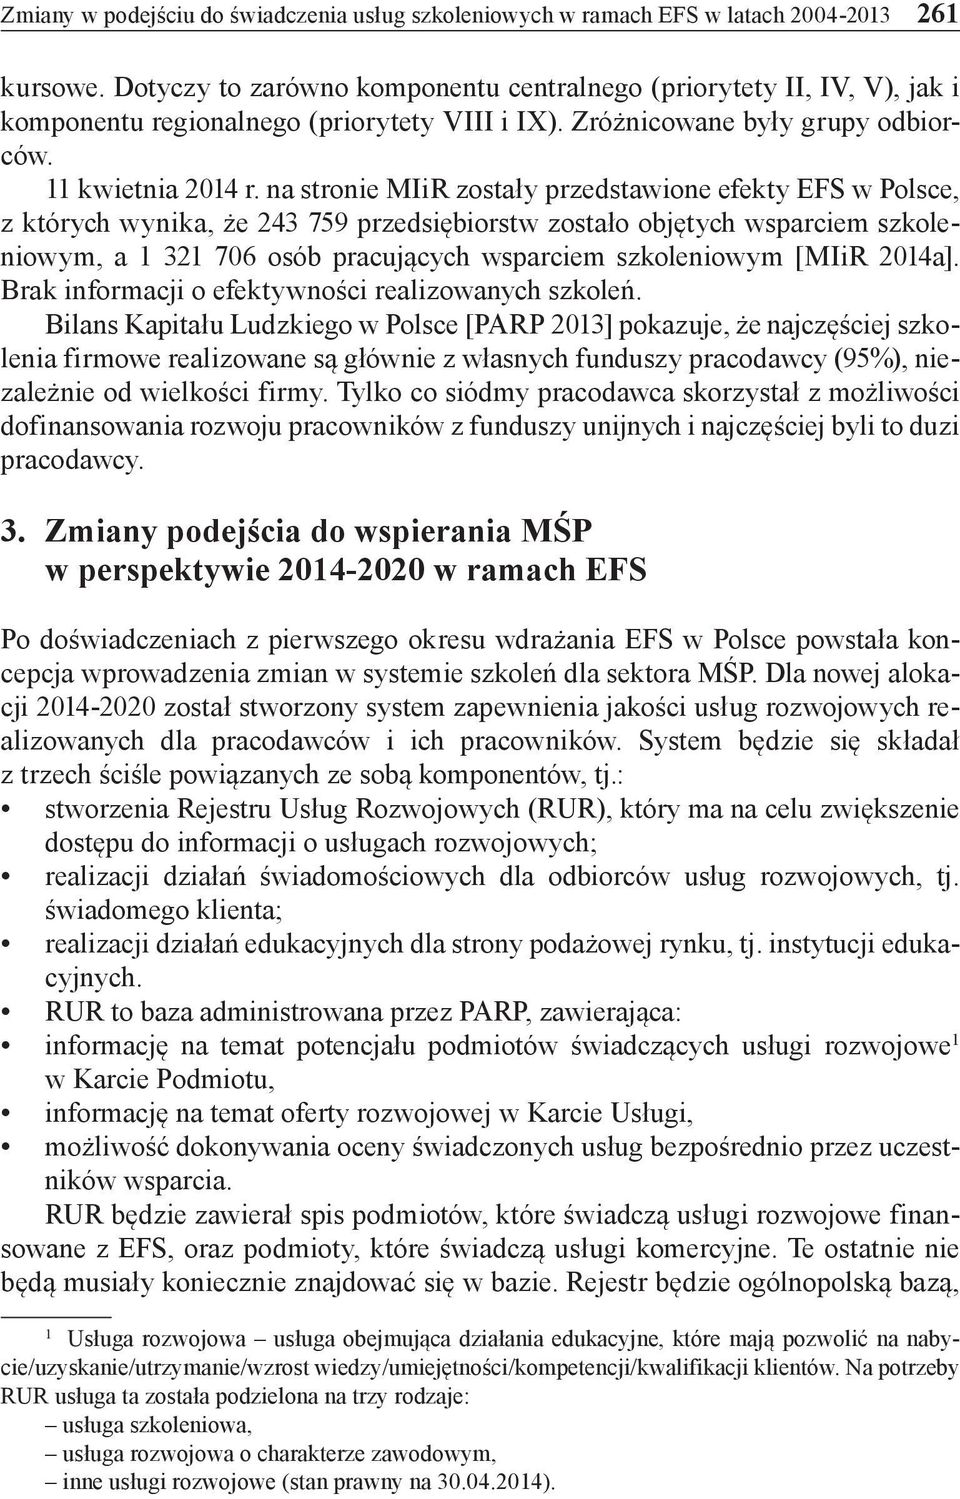 na stronie MIiR zostały przedstawione efekty EFS w Polsce, z których wynika, że 243 759 przedsiębiorstw zostało objętych wsparciem szkoleniowym, a 1 321 706 osób pracujących wsparciem szkoleniowym